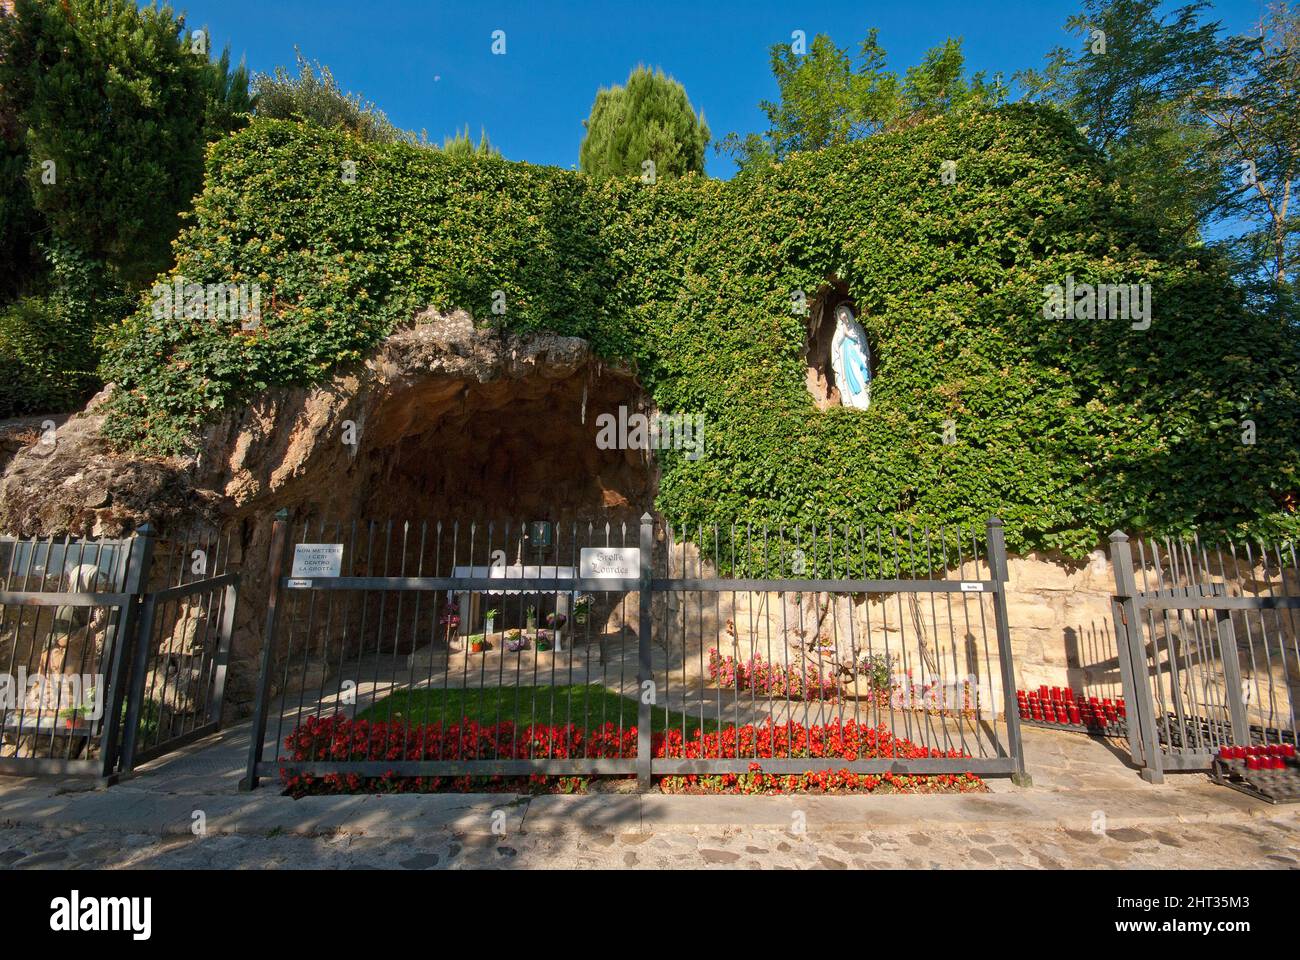 Riproduzione della grotta di Lourdes al Santuario del Canoscio, Città di Castello, alta Valle del Tevere, Umbria, Italia Foto Stock